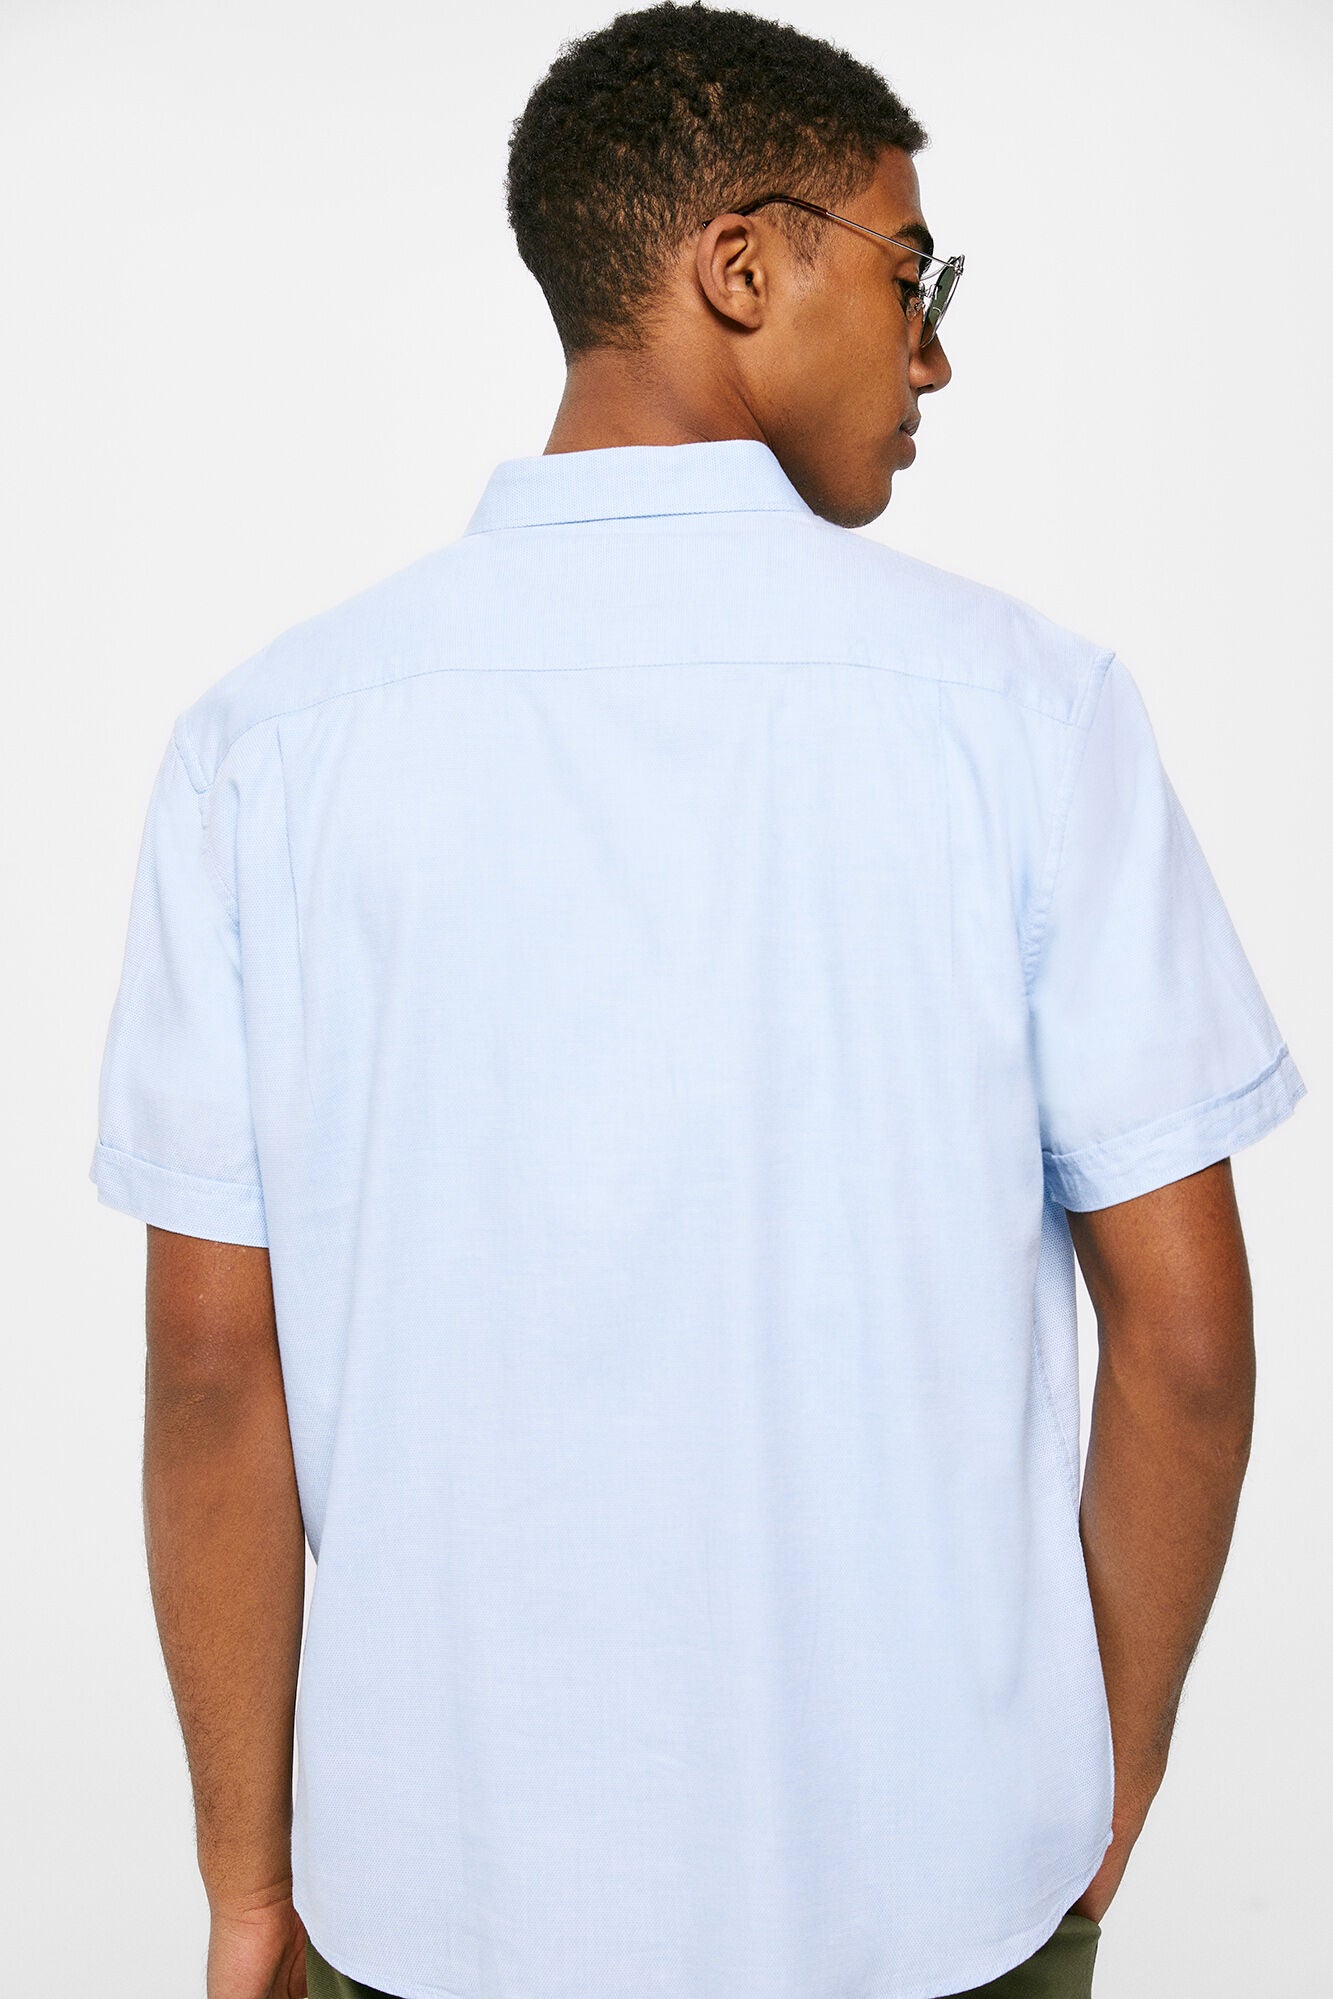 Textured colour Short Sleeve shirt (Regular Fit) - Light Blue